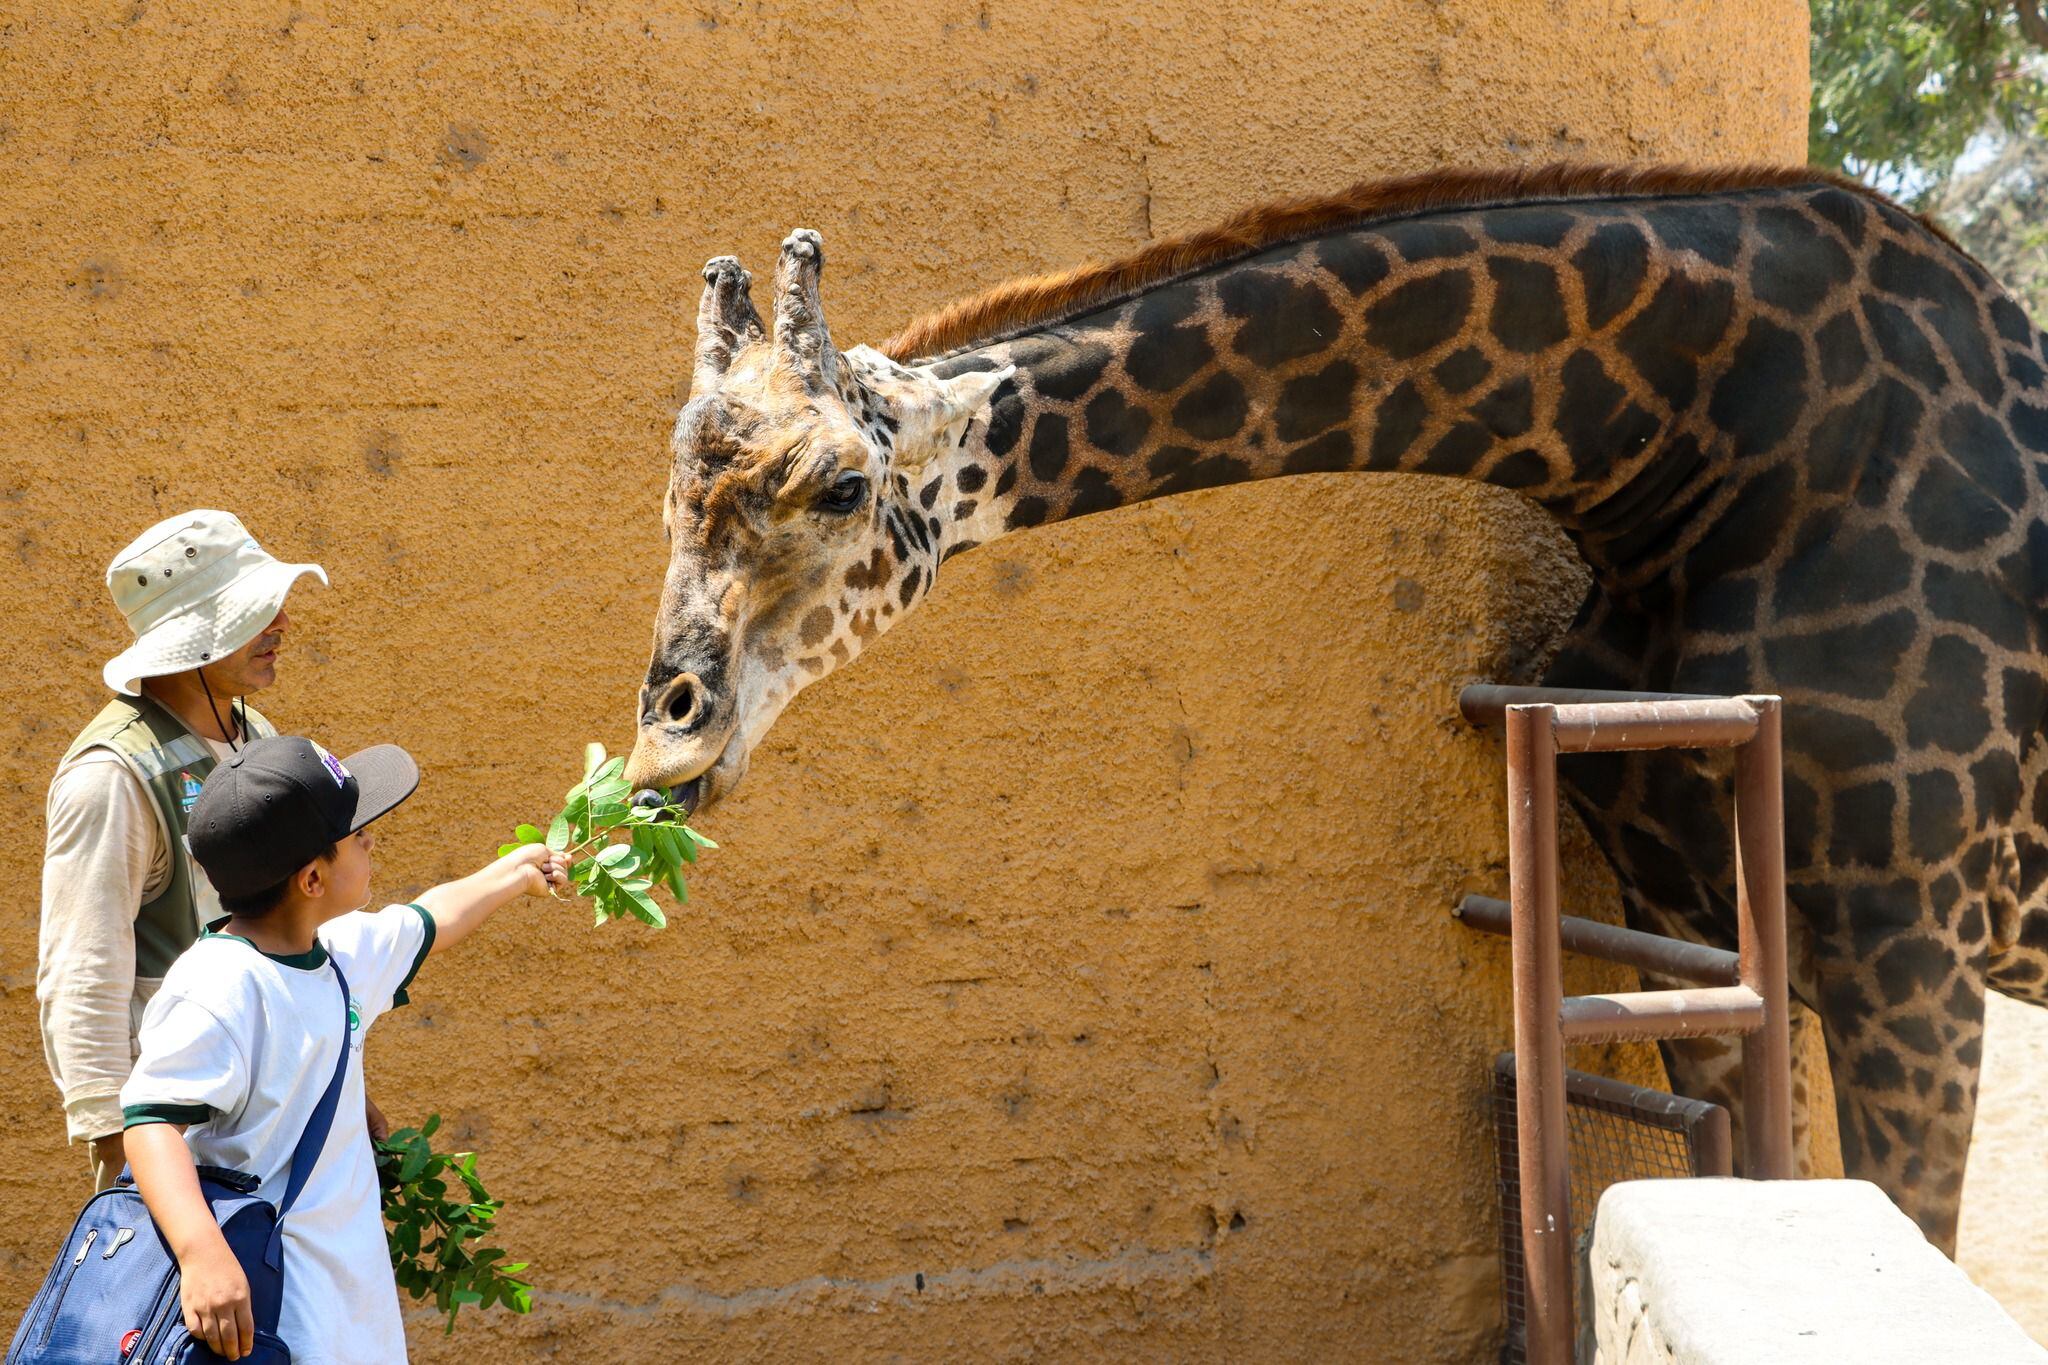 En presencia de un cuidador, un escolar ofrece comida a la jirafa, una de las especies que despierta más la atención de los visitantes del Parque de las Leyendas.